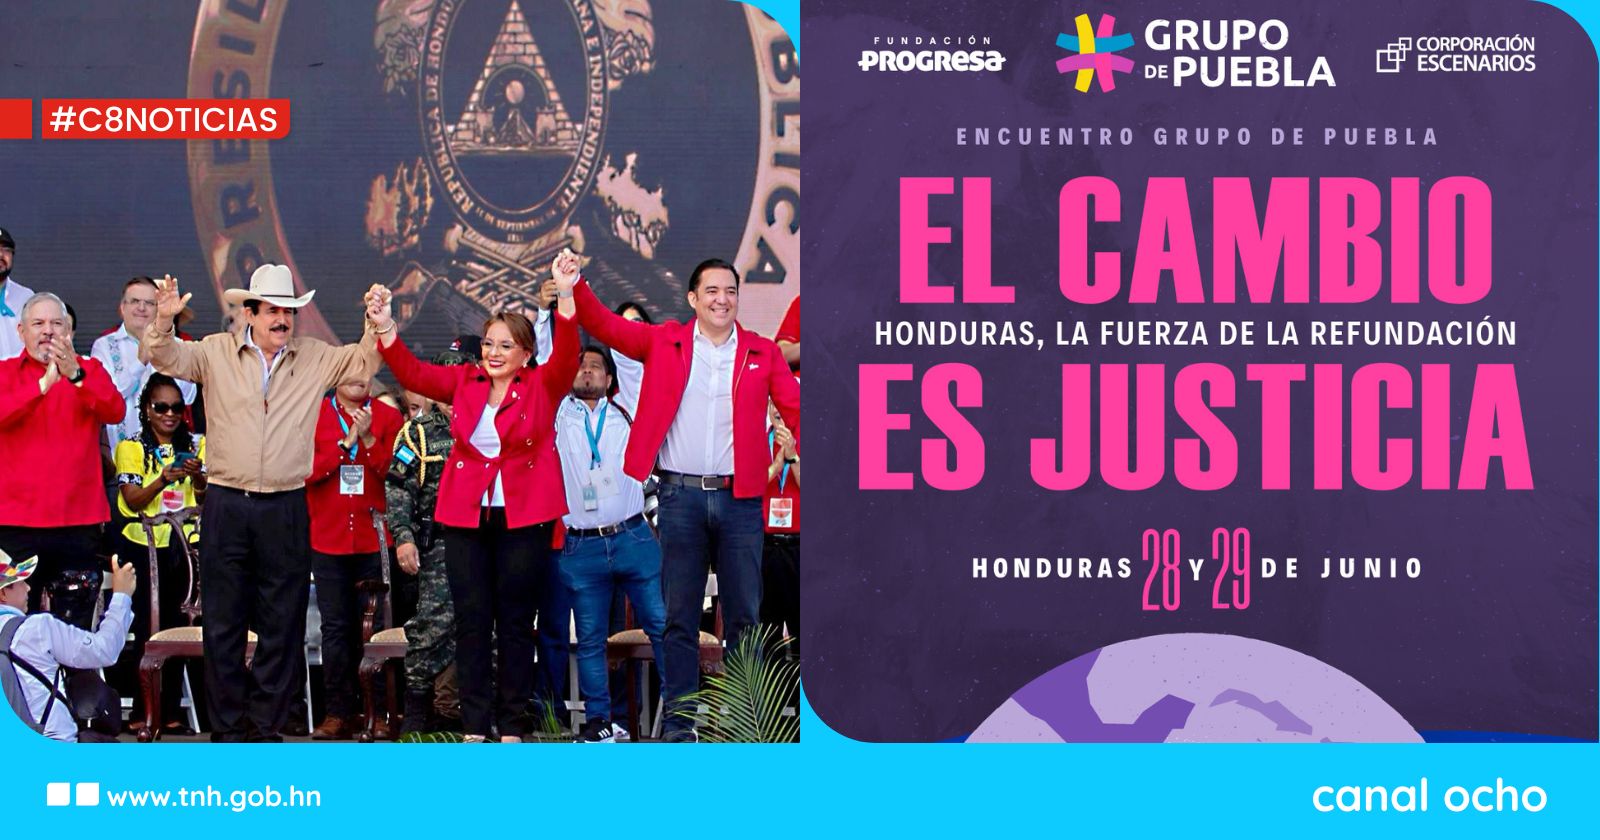 Sesión de trabajo del Grupo de Puebla: “El cambio es justicia, Honduras la fuerza de la refundación”